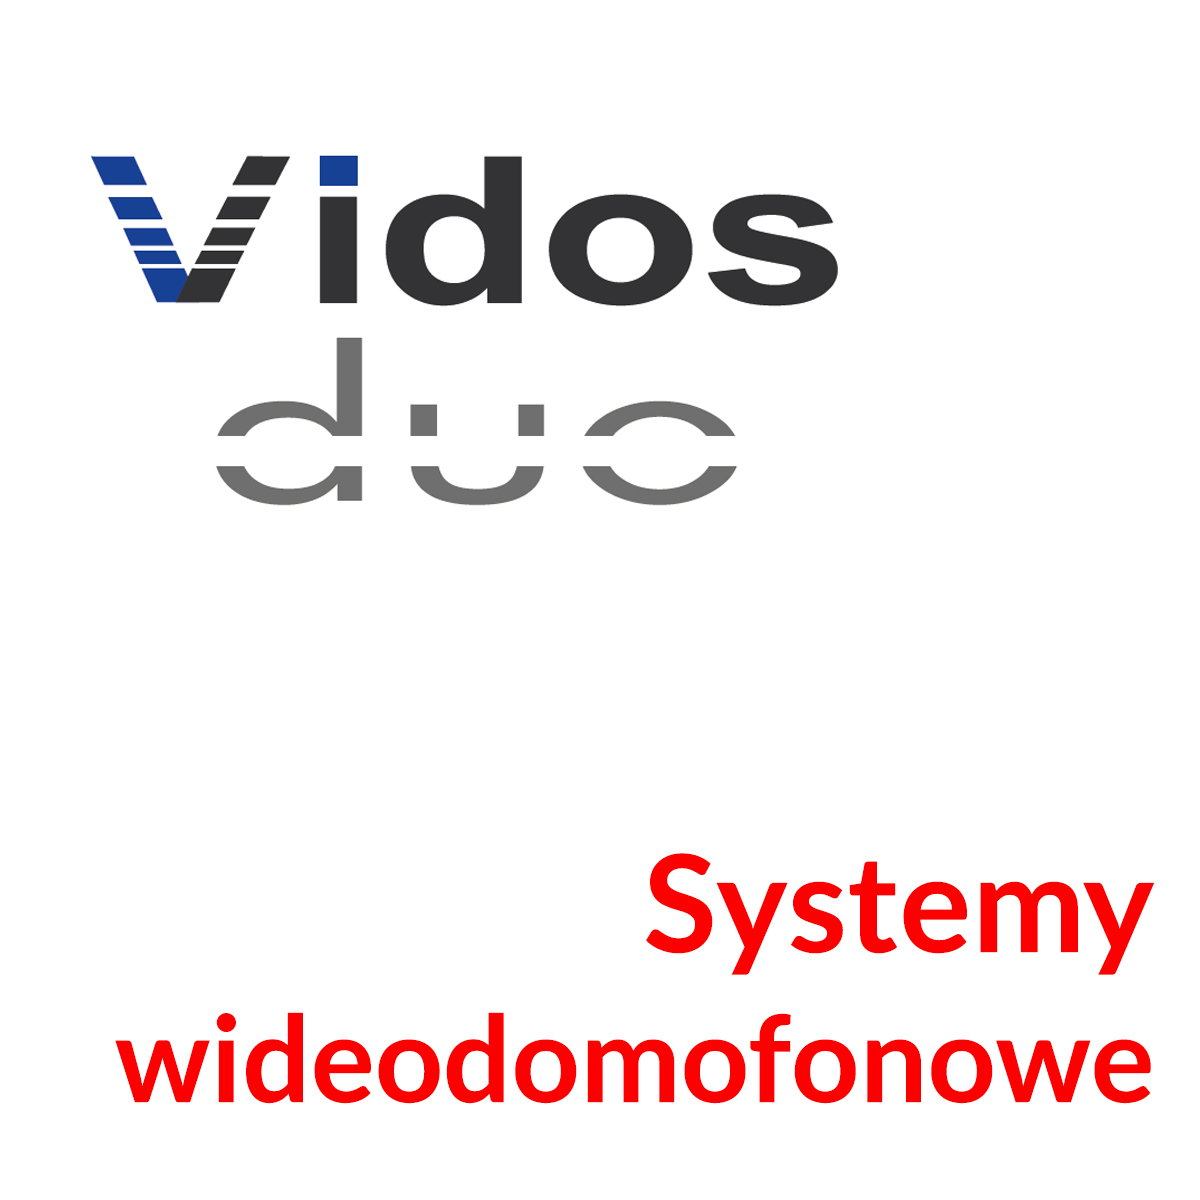 Systemy wideodomofonowe 2-żyłowe Vidos DUO